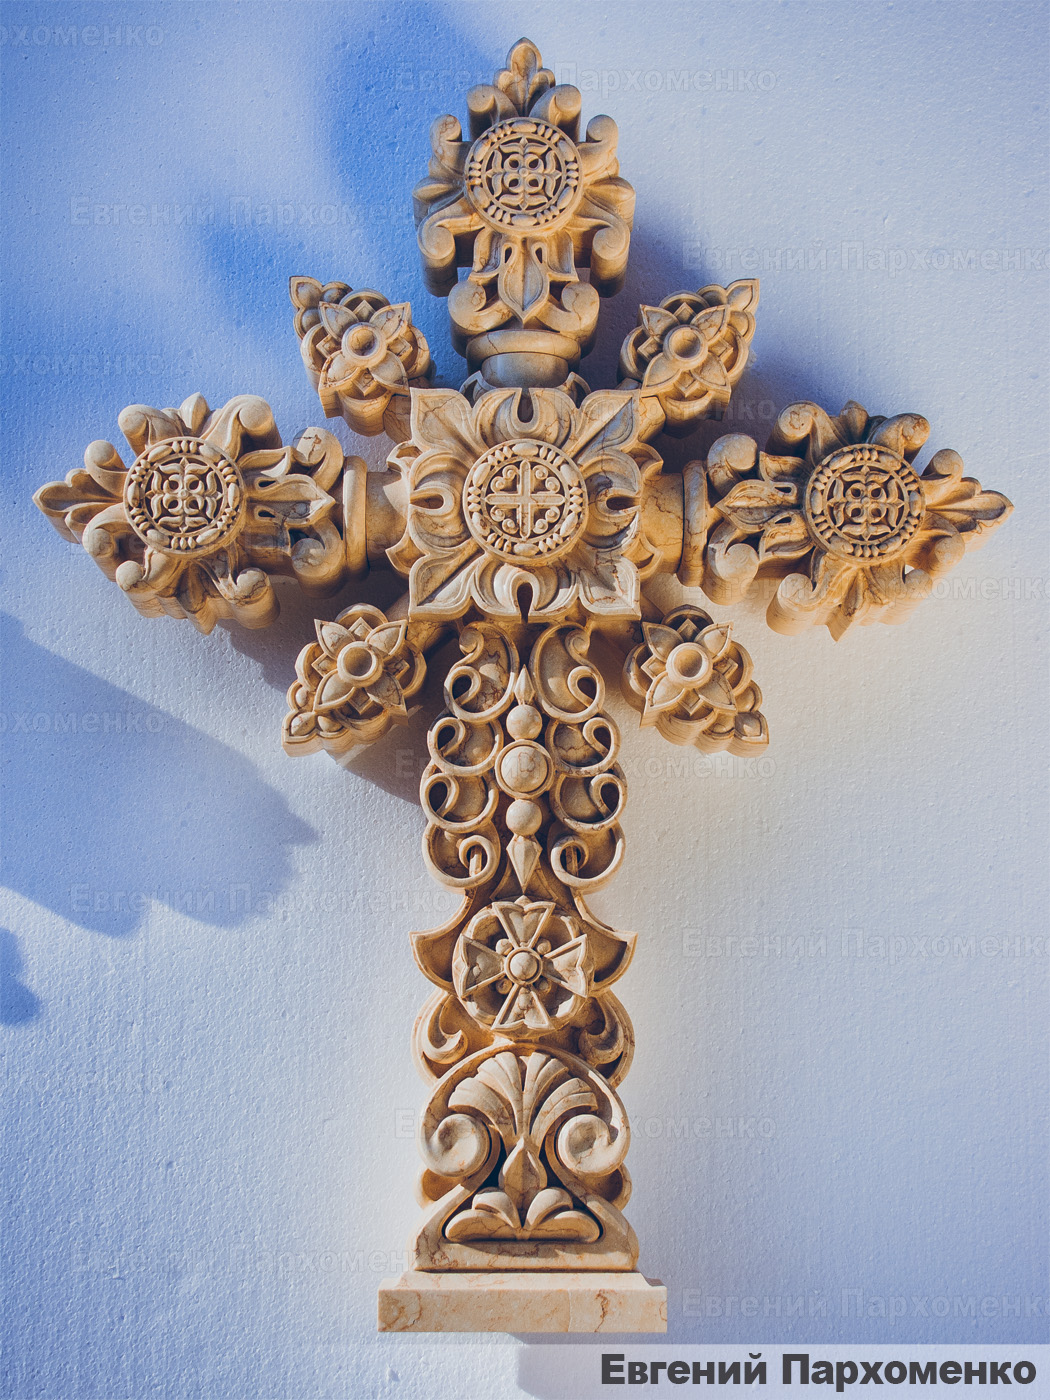 Мраморный крест с резьбой в неорусском стиле